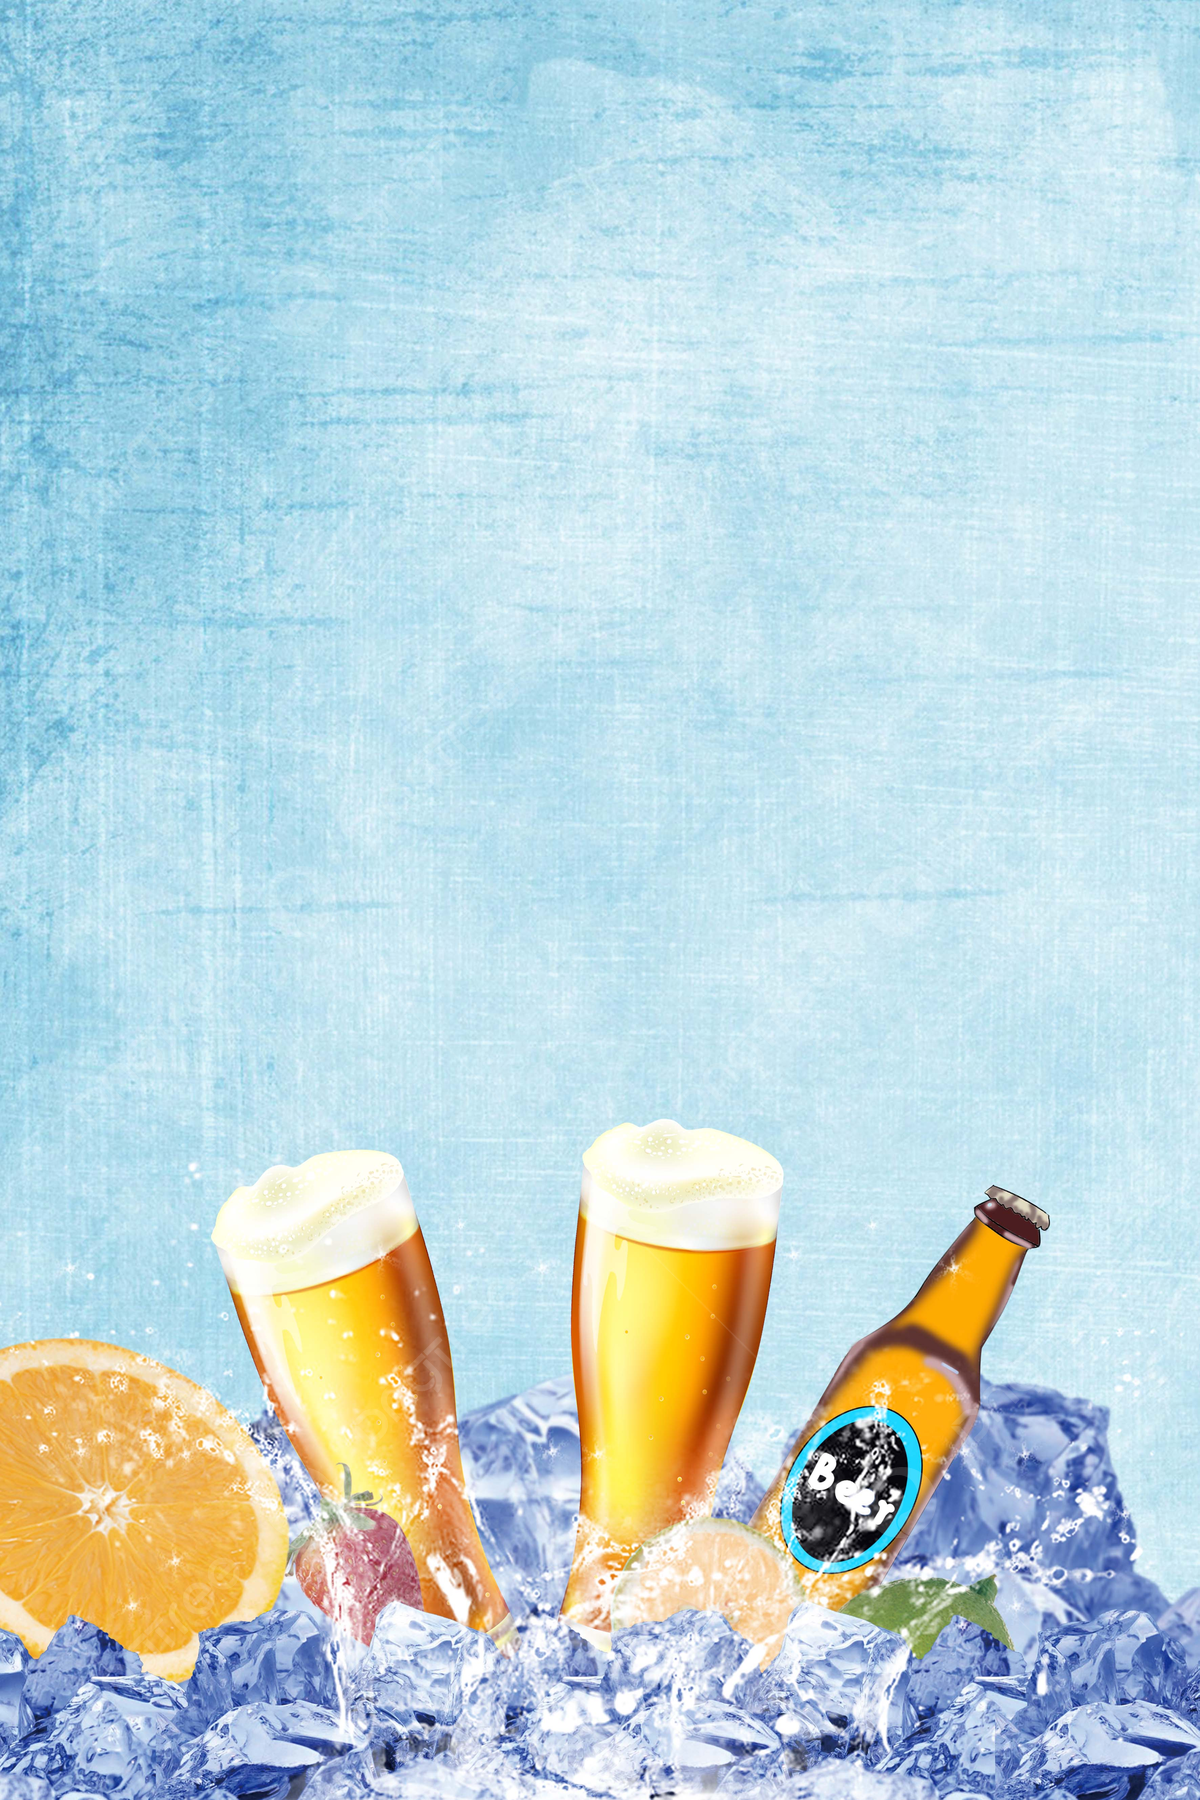  Bier Hintergrundbild 1200x1800. Plakat Für Kaltes Bier Hintergrund Hintergrundbild zum kostenlosen Download